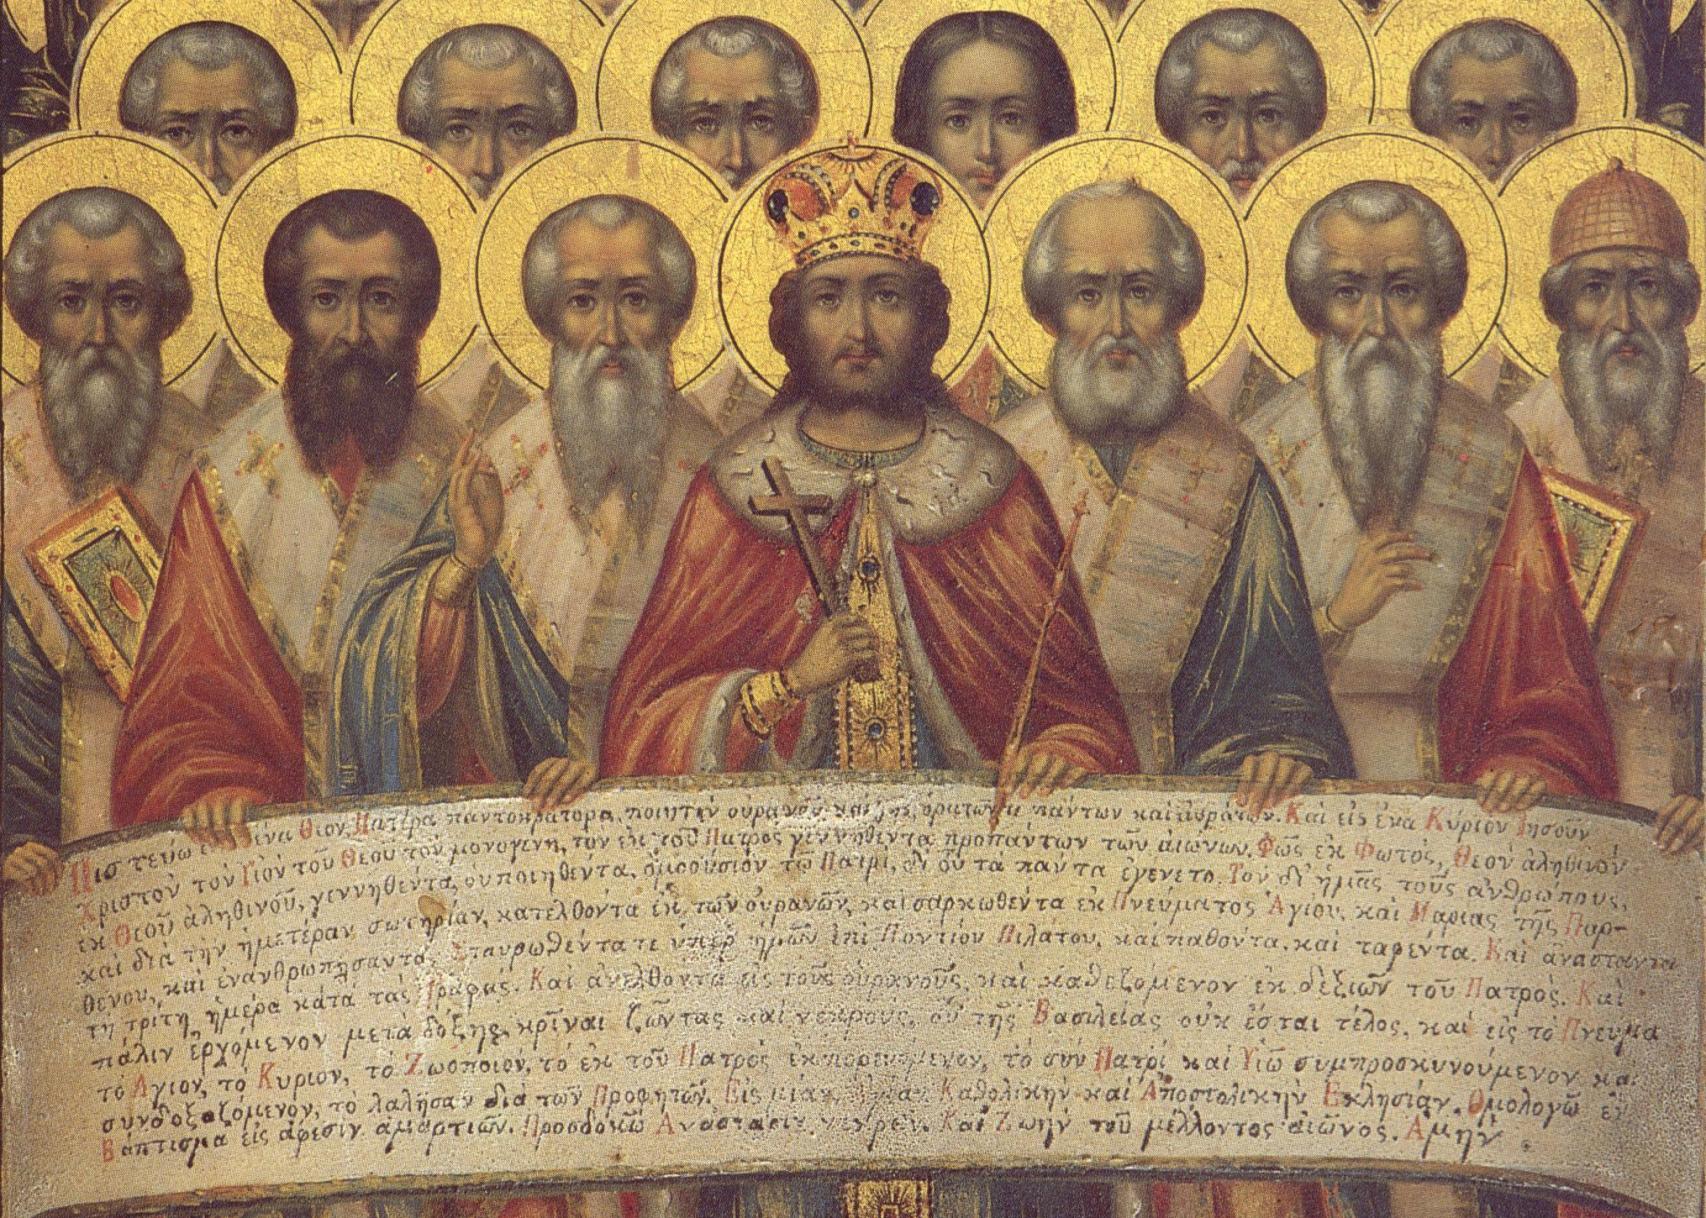 Otra ilustración que represente el Concilio de Nicea.